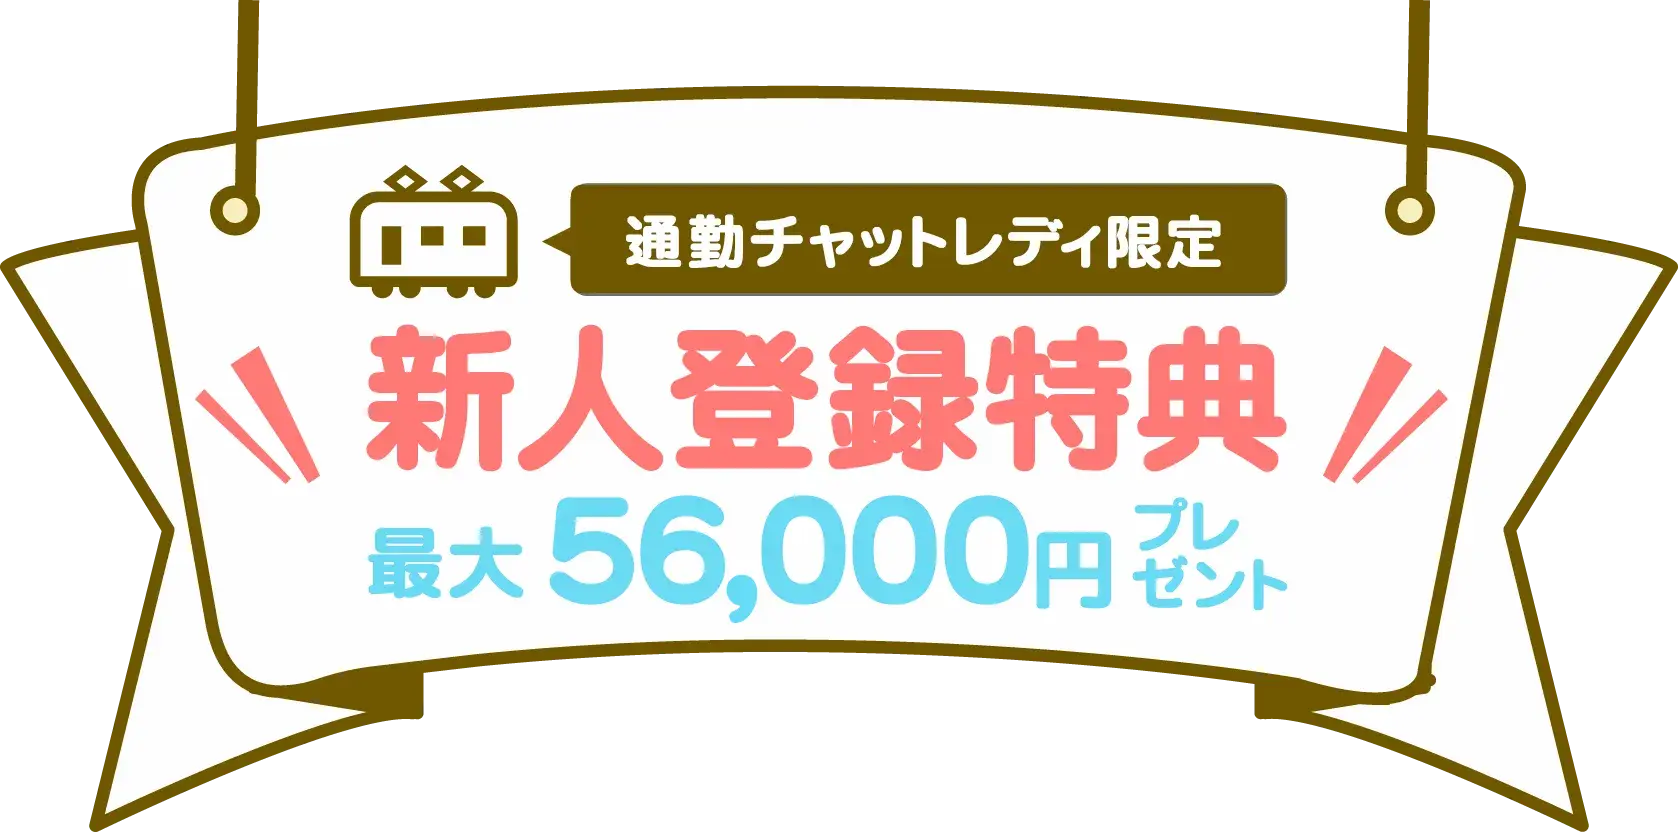 通勤チャットレディ限定 新人登録特典最大56,000円プレゼント